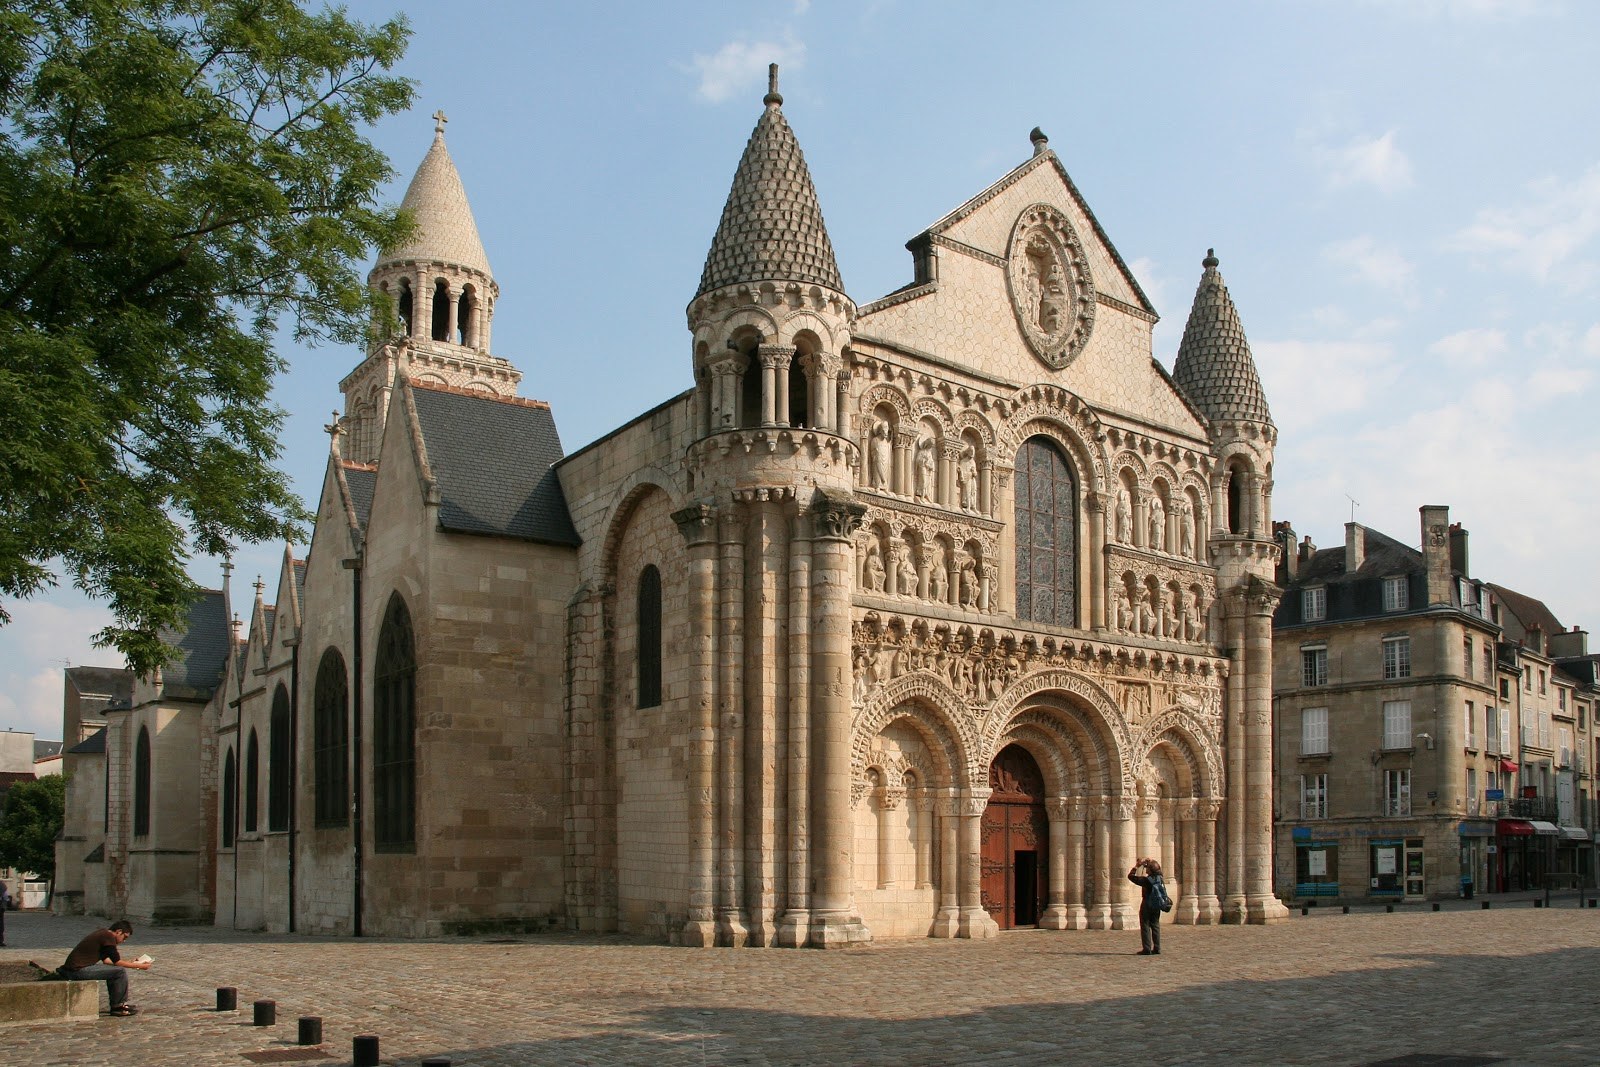 Нотр дам ля гранд. Церковь Нотр-дам-ля-Гранд в Пуатье, Франция. Нотр дам де ла Гранд в Пуатье. Нотр дам ля Гранд, Пуатье, Франция, 11-век.